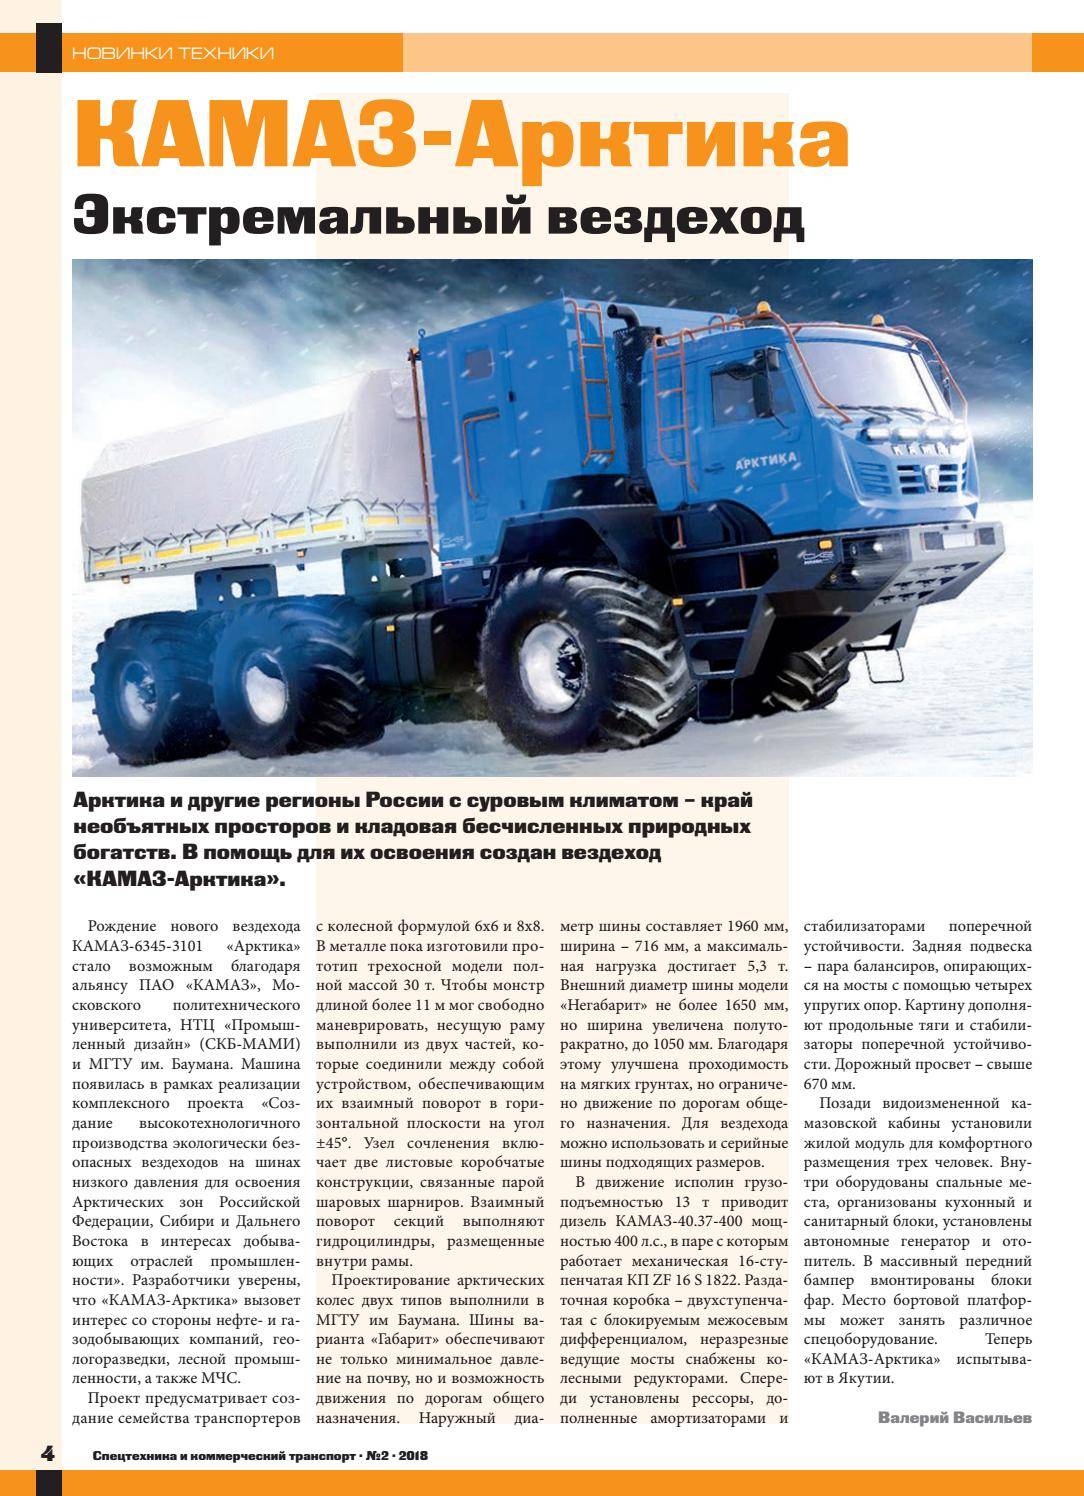 Камаз арктика: технические характеристики | грузовик.биз